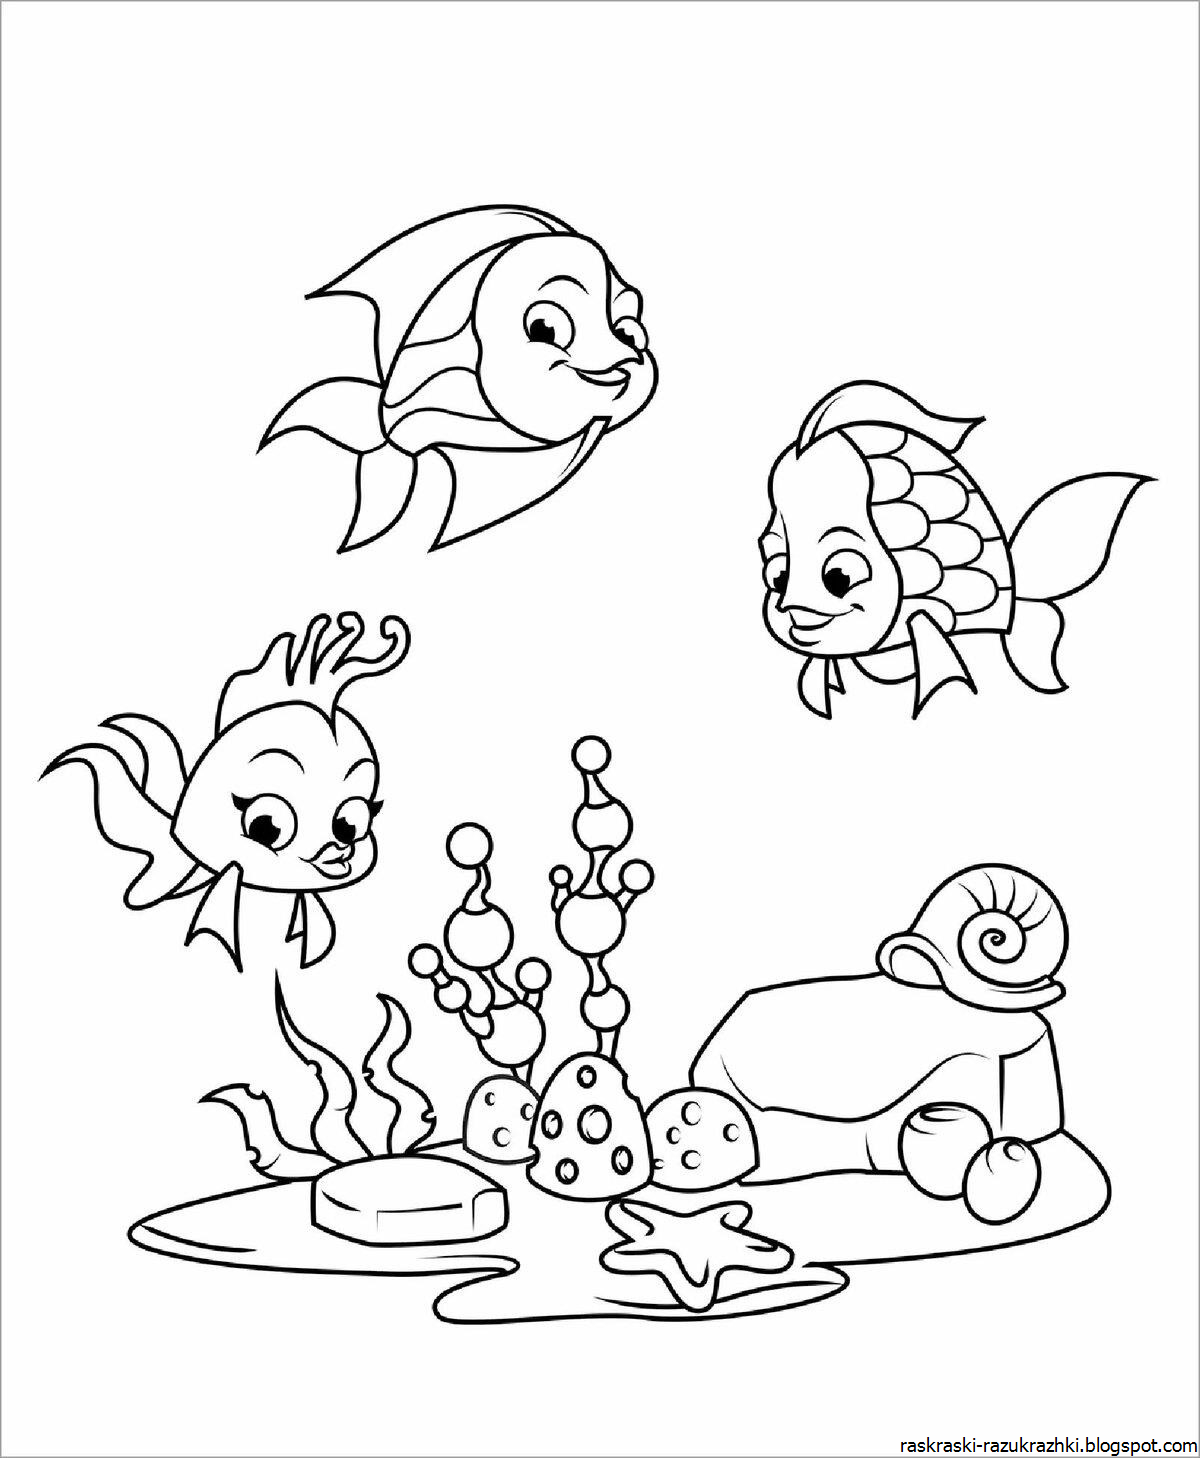 Раскраска рыбы для детей 7 лет. Раскраска рыбка. Аквариумные рыбки раскраска. Детские раскраски рыбки. Рыбка раскраска для детей.